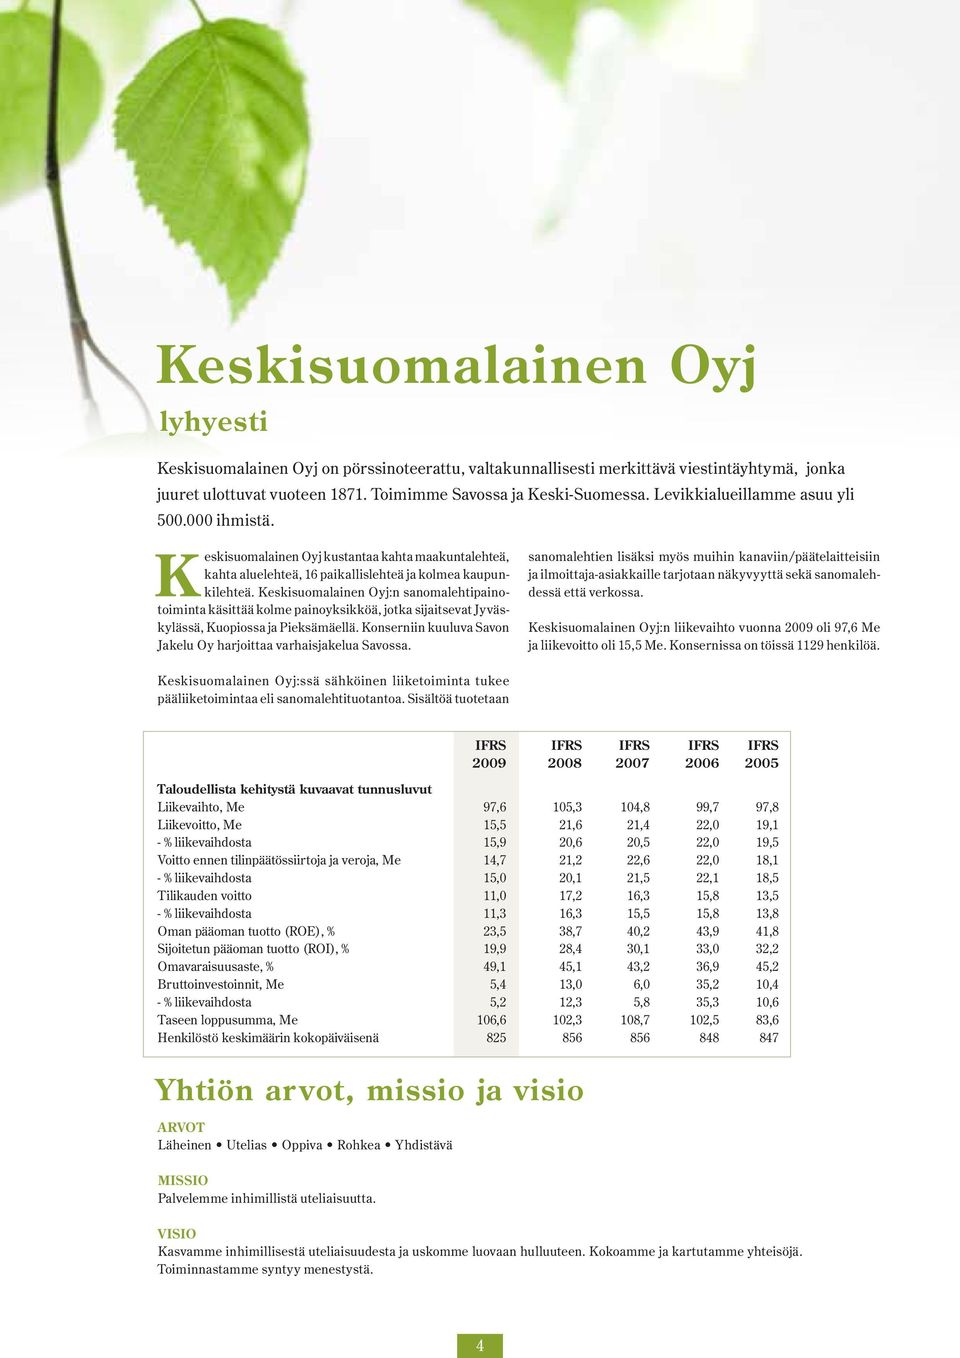 Keskisuomalainen Oyj:n sanomalehtipainotoiminta käsittää kolme painoyksikköä, jotka sijaitsevat Jyväskylässä, Kuopiossa ja Pieksämäellä.